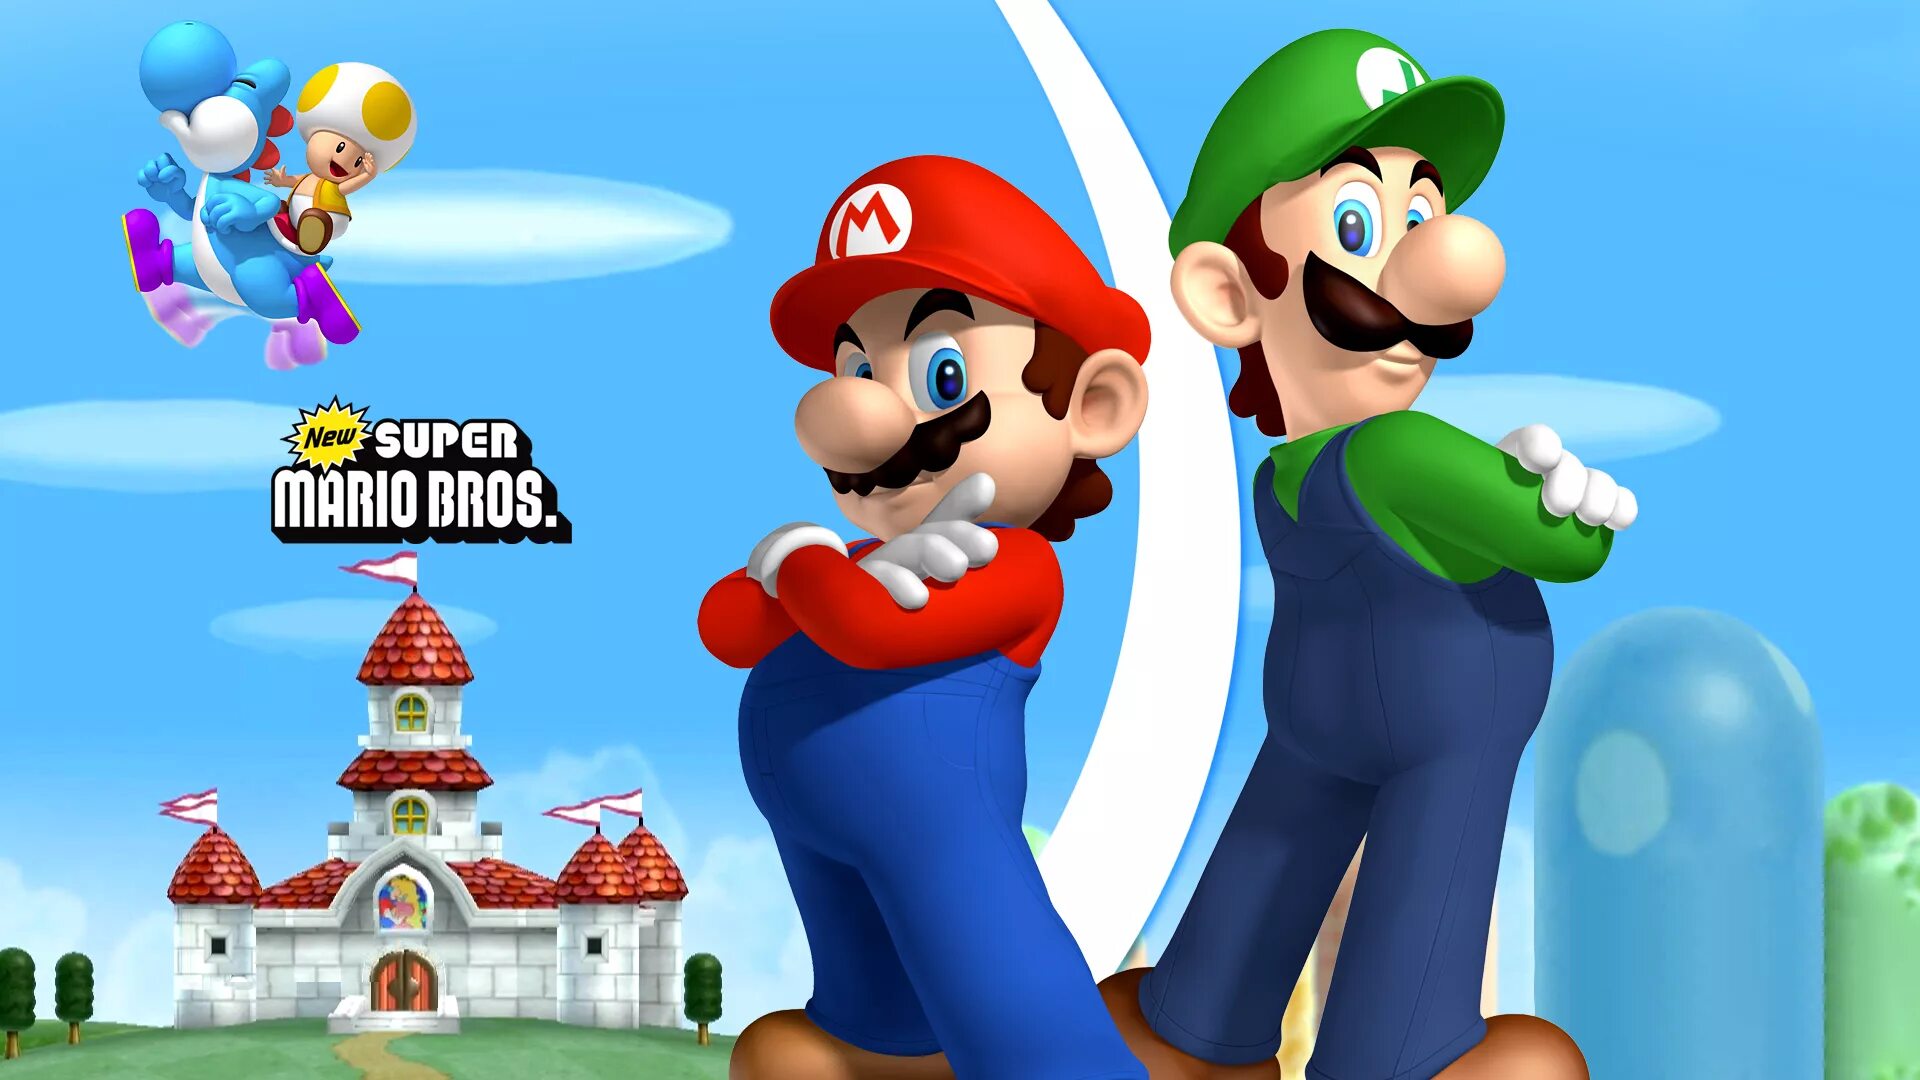 Включи супер марио бразерс. Mario 1999. Марио и Луиджи игра. Игра Марио супер Марио БРОС. Игры New super Mario Bros Wii.